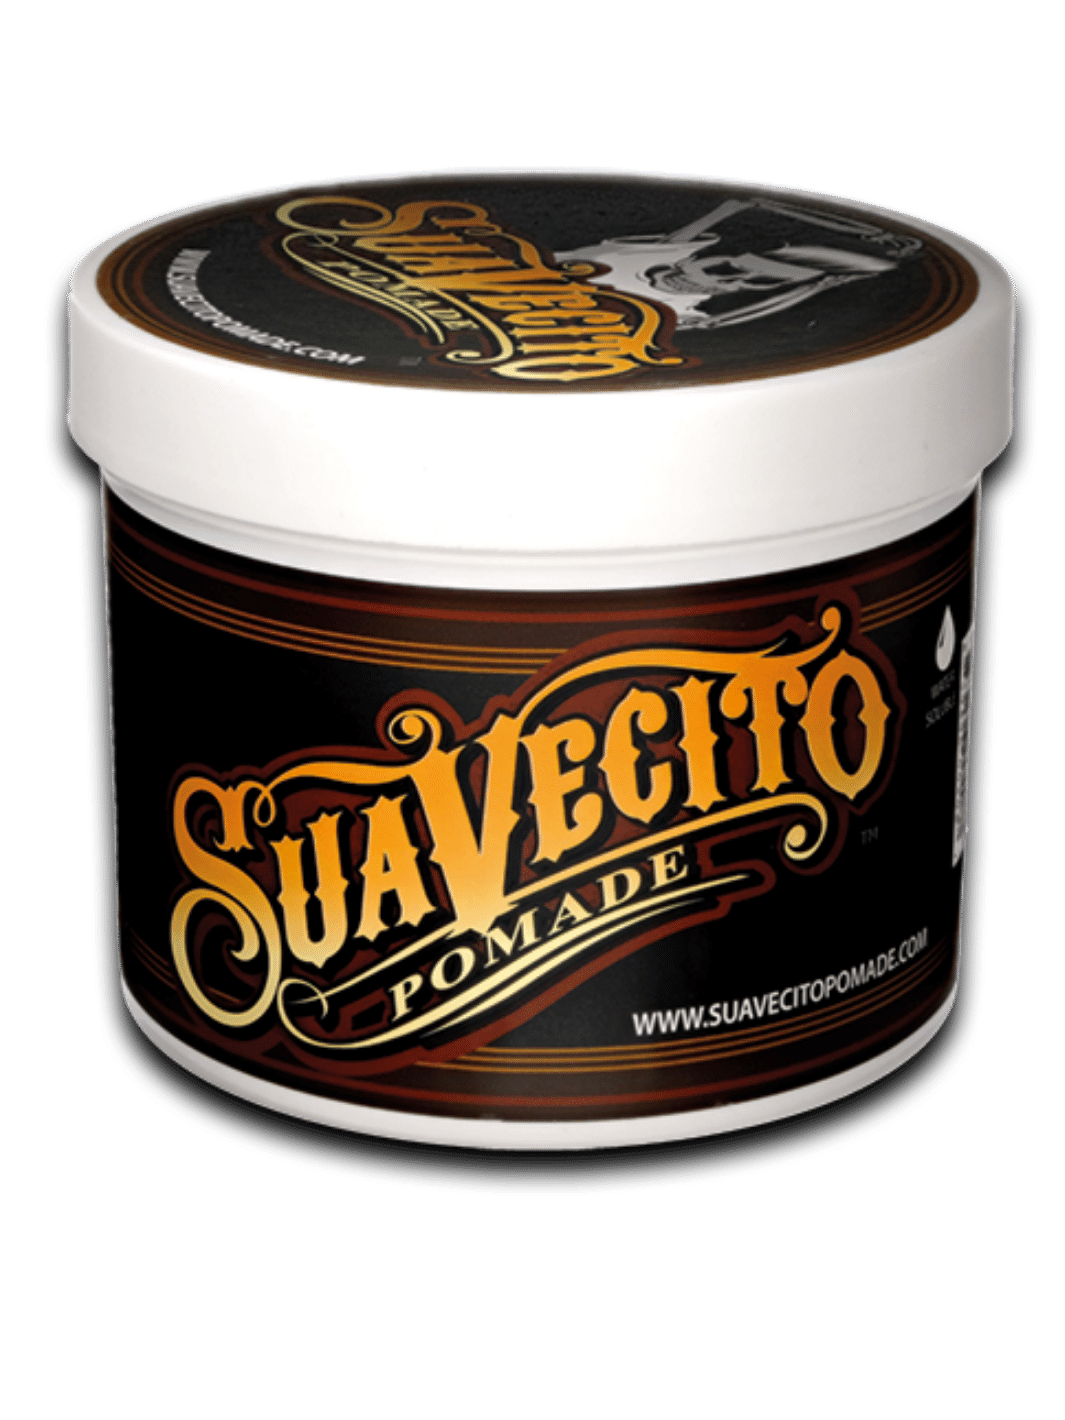 Suavecito Pomade Original, 113g Dose, bietet mittleren Halt und hohen Glanz, ideal für klassische Frisuren wie Pompadours und Slick-backs, in einer ikonischen schwarzen Dose mit dem klassischen Suavecito-Logo, erhältlich bei Phullcutz.